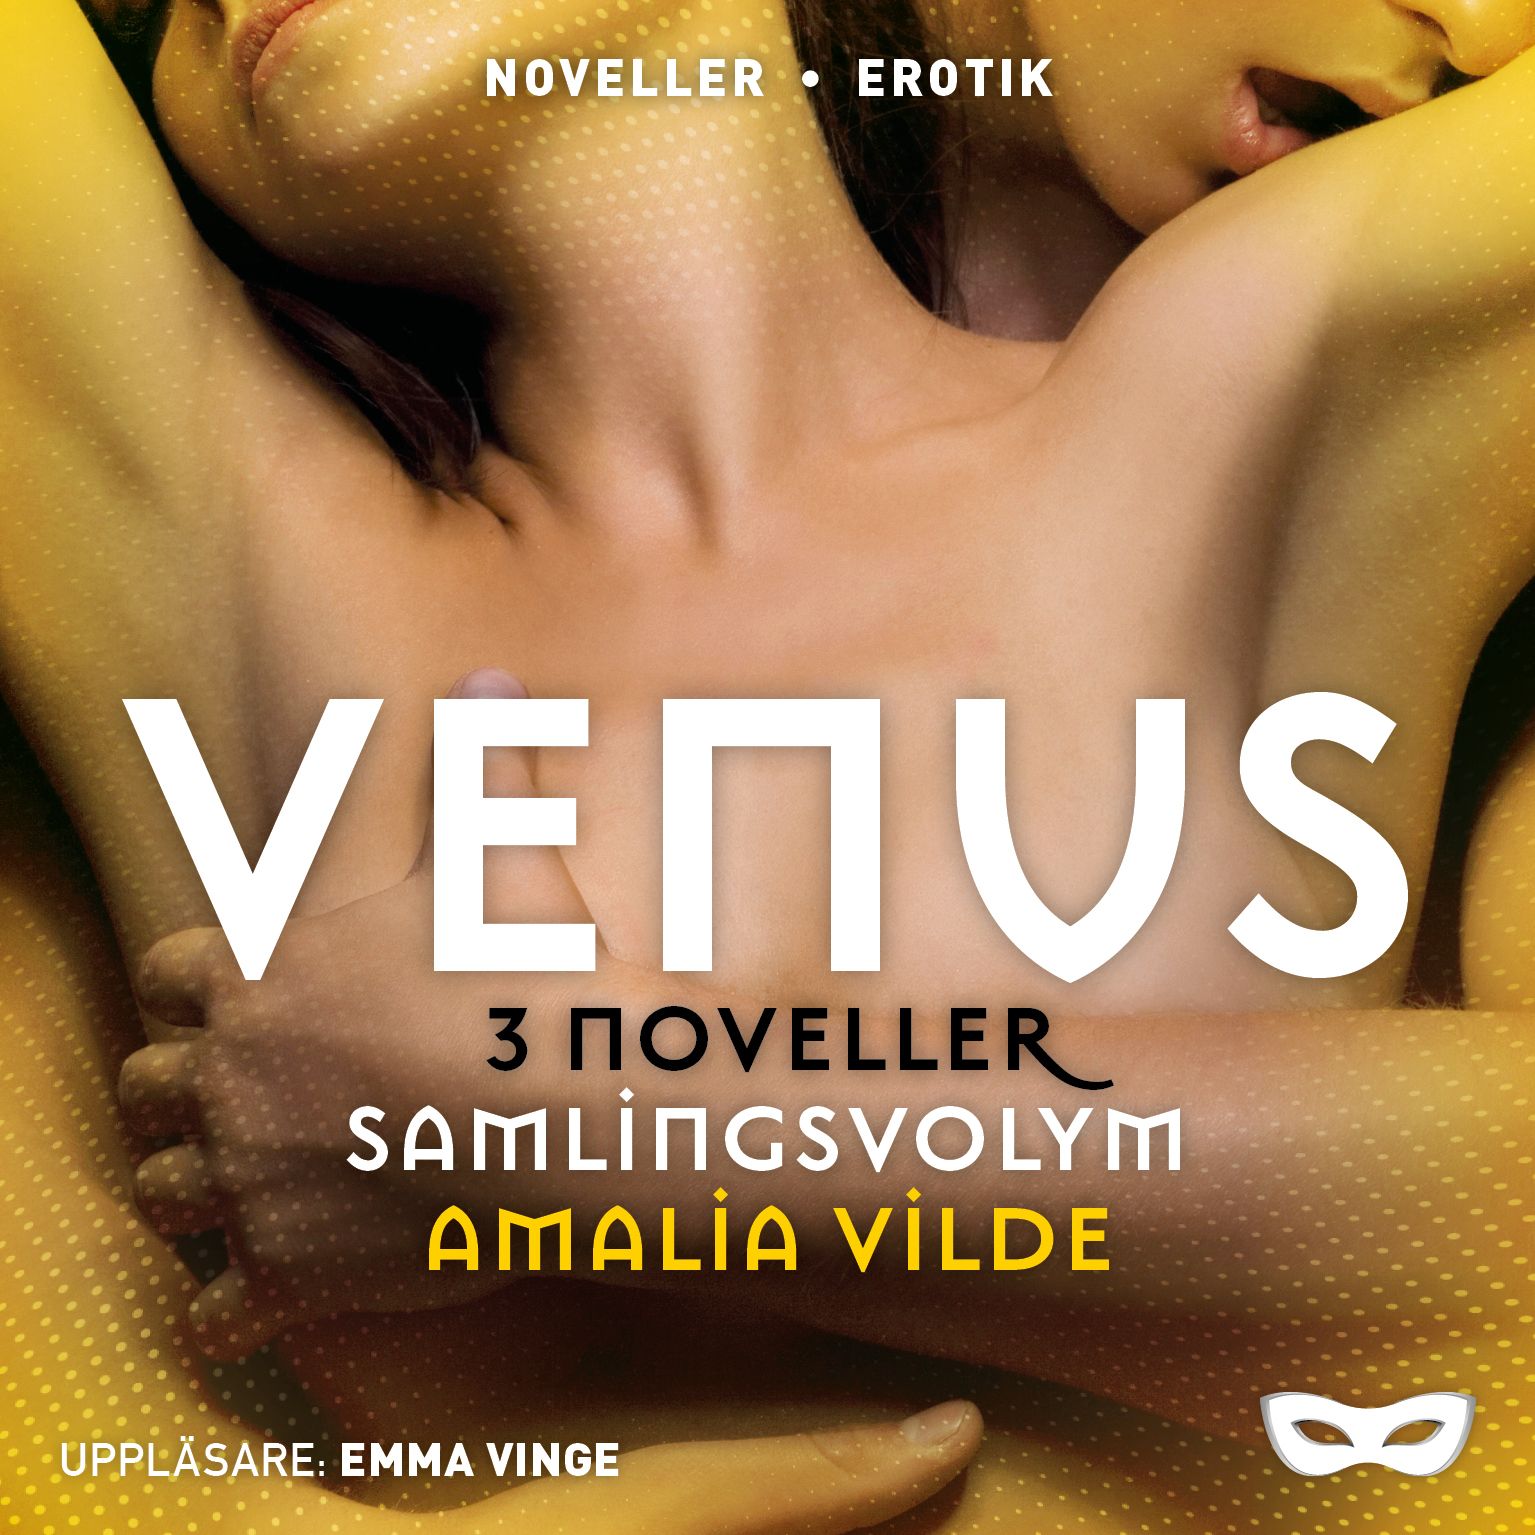 Venus 3 noveller (samlingsvolym), lydbog af Amalia Vilde